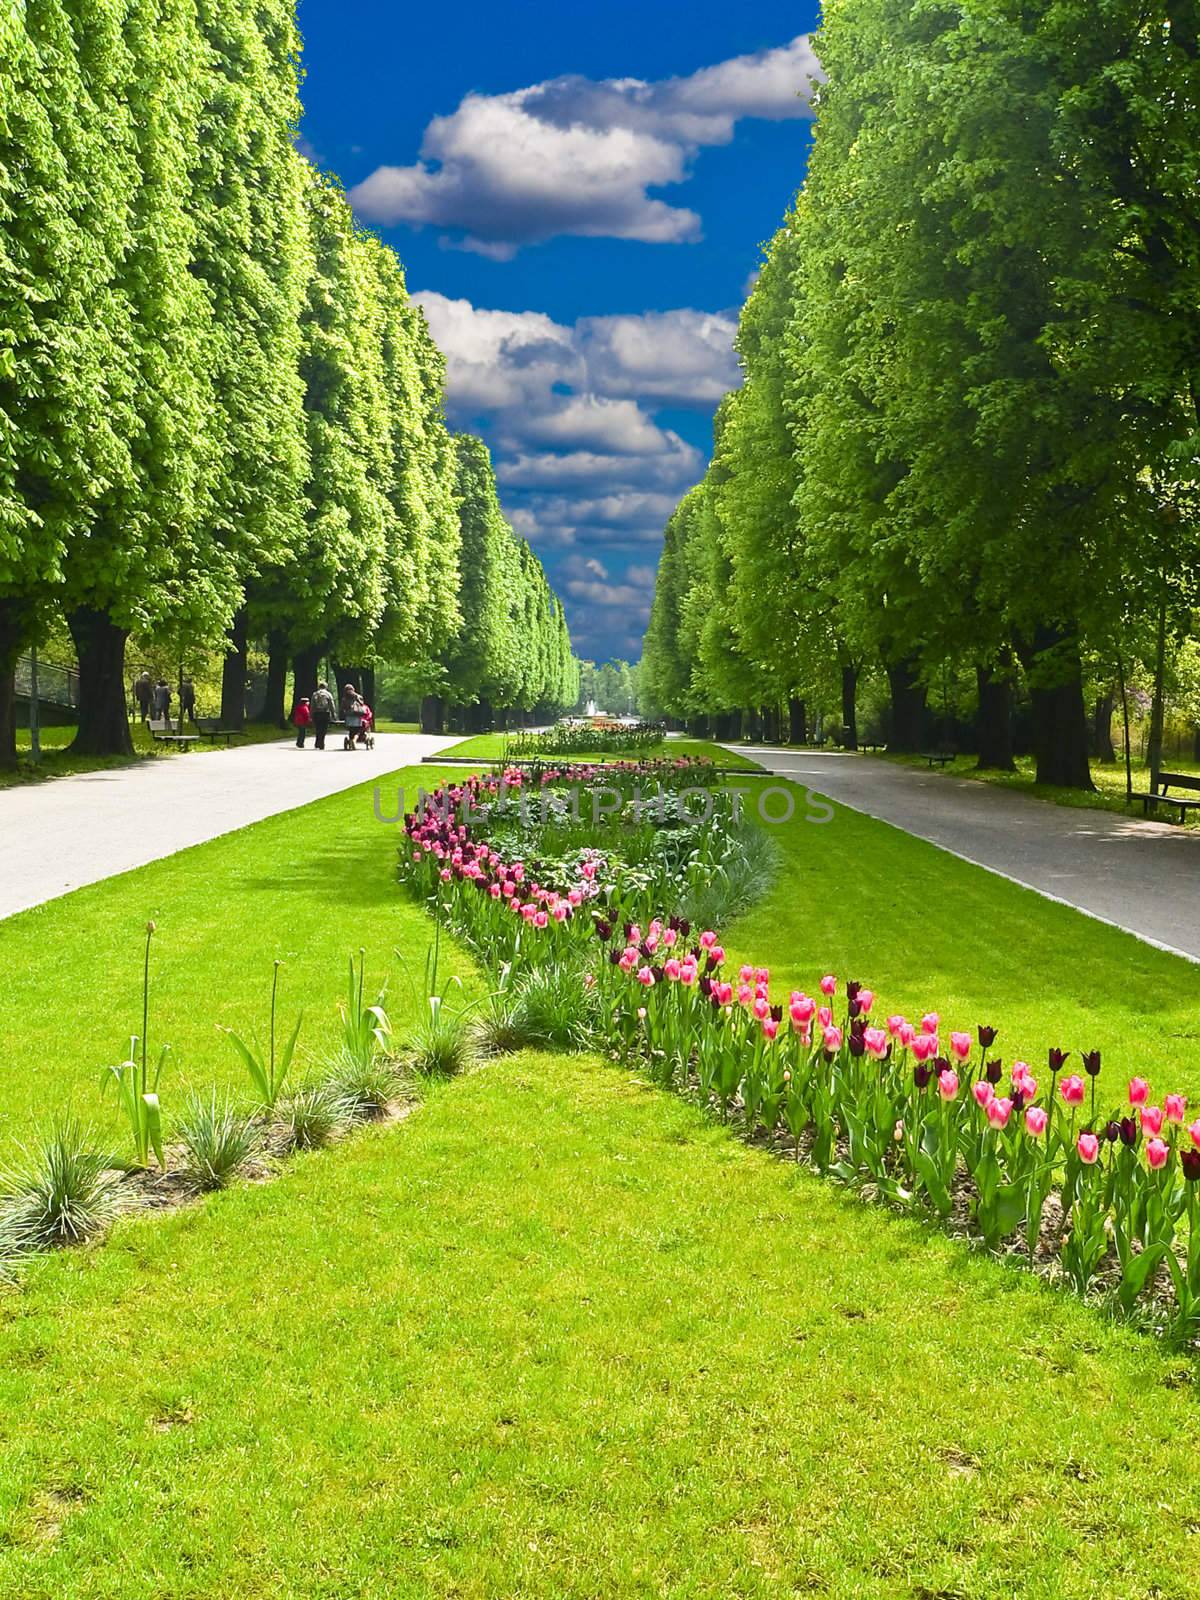 Central park "Flora" in Olomouc city - Czech republic by mozzyb